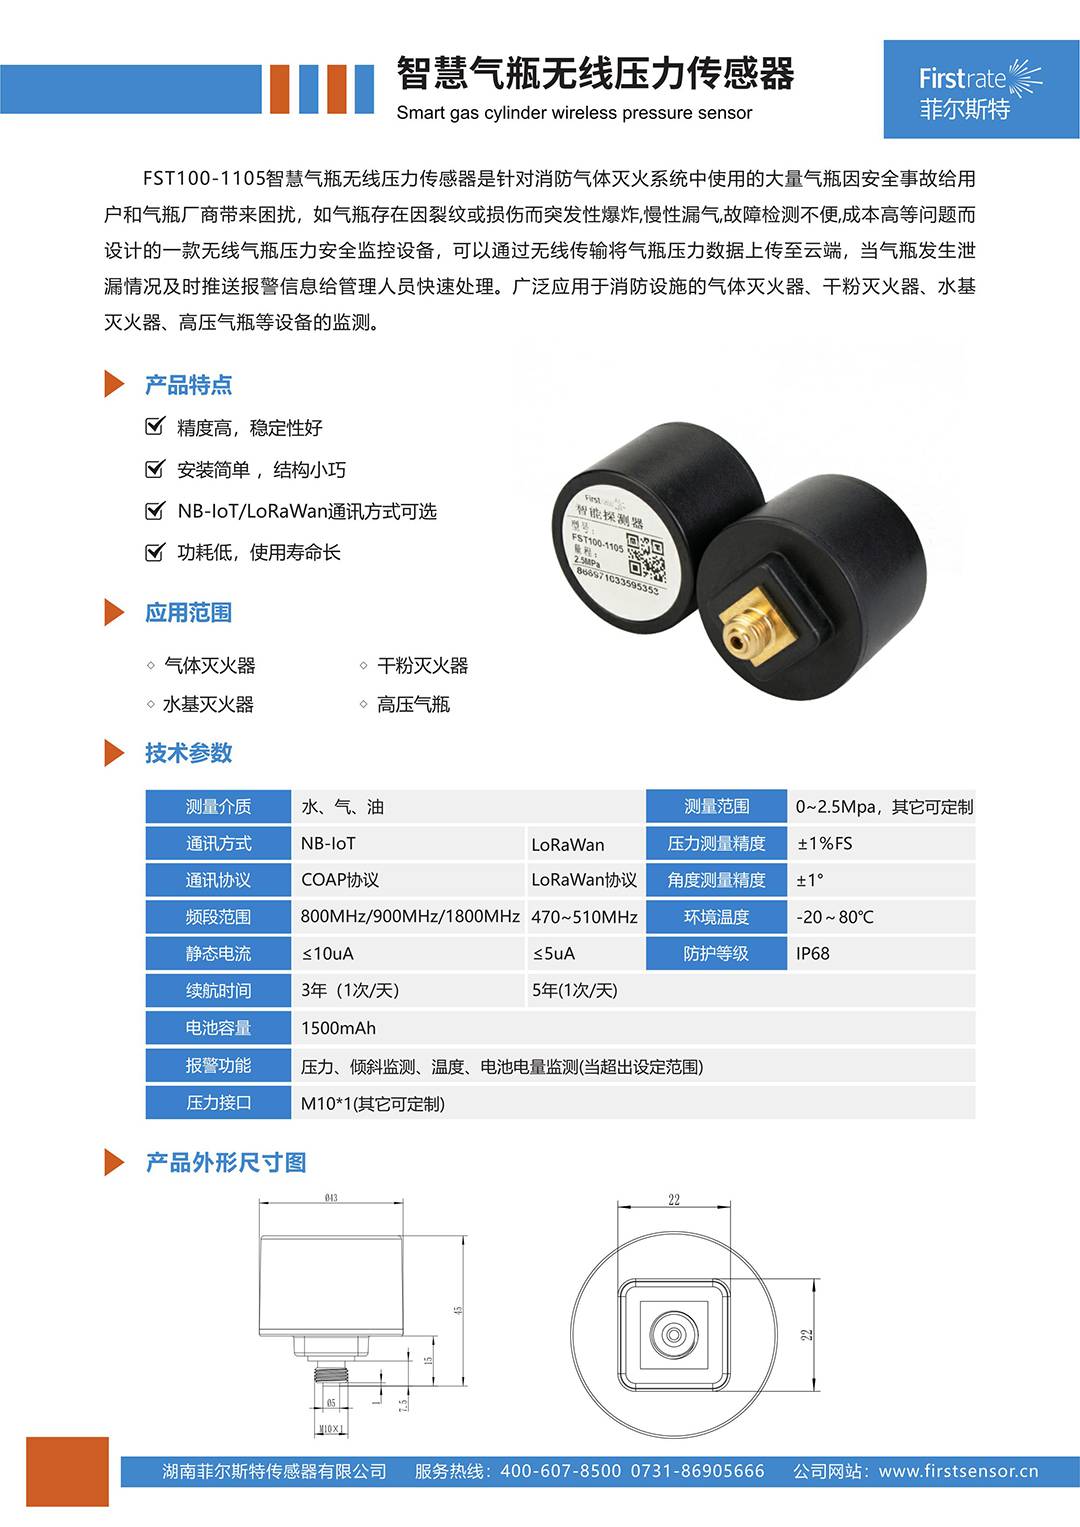 FST100-1105智慧气瓶无线压力传感器[简版样本]_imgs-0001.jpg